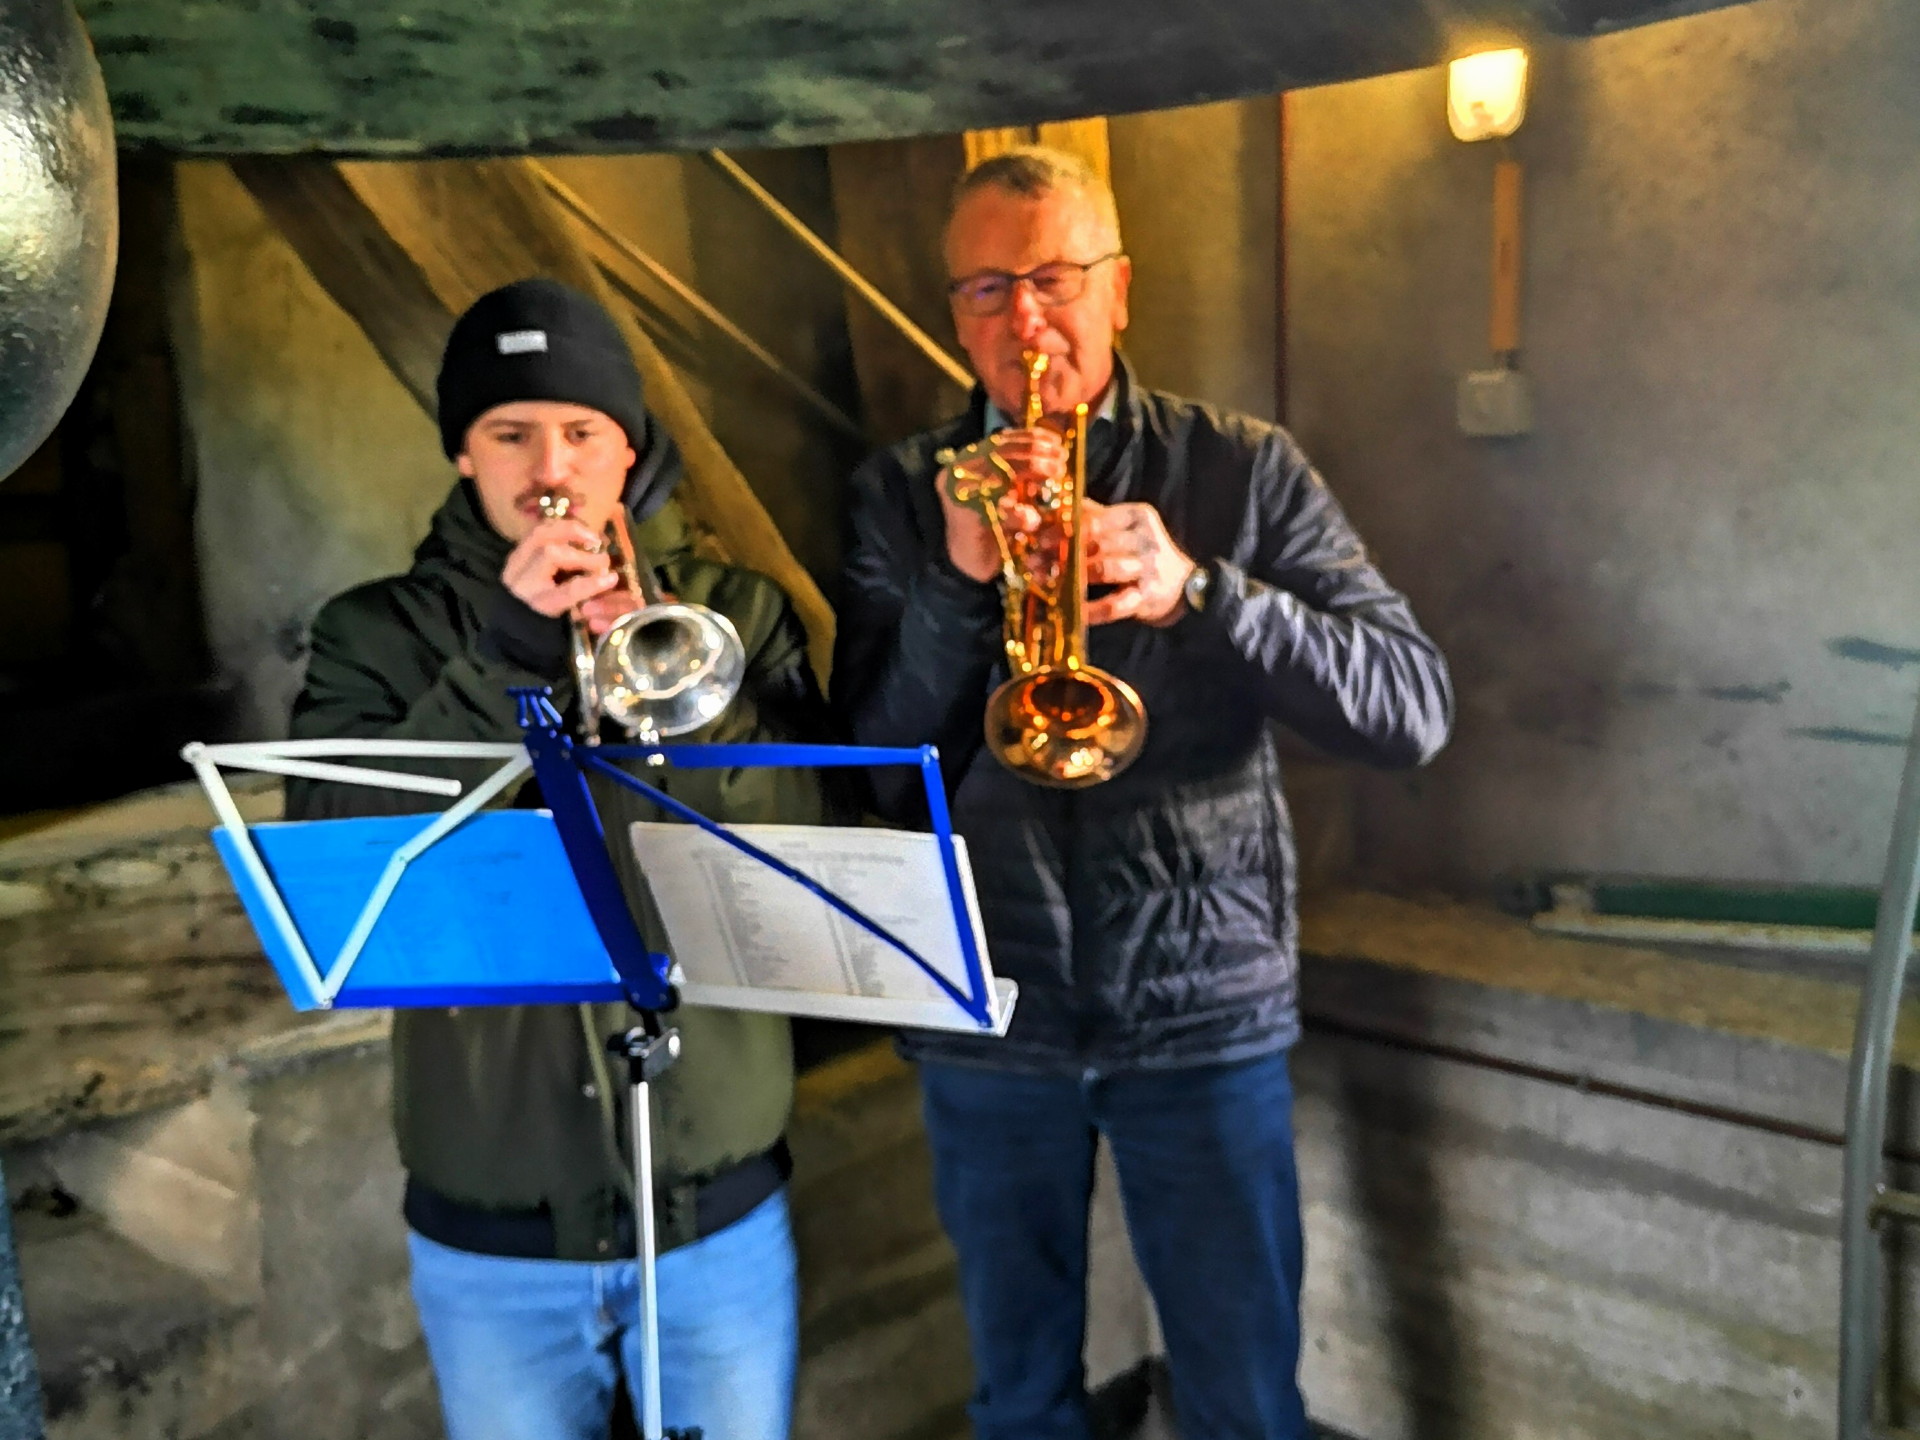 Turmmusik, Turmbläser der Ortsmusik Rüediswil. Hubert und Sepp spielen auf der Trompete Weihnachtsmelodien.